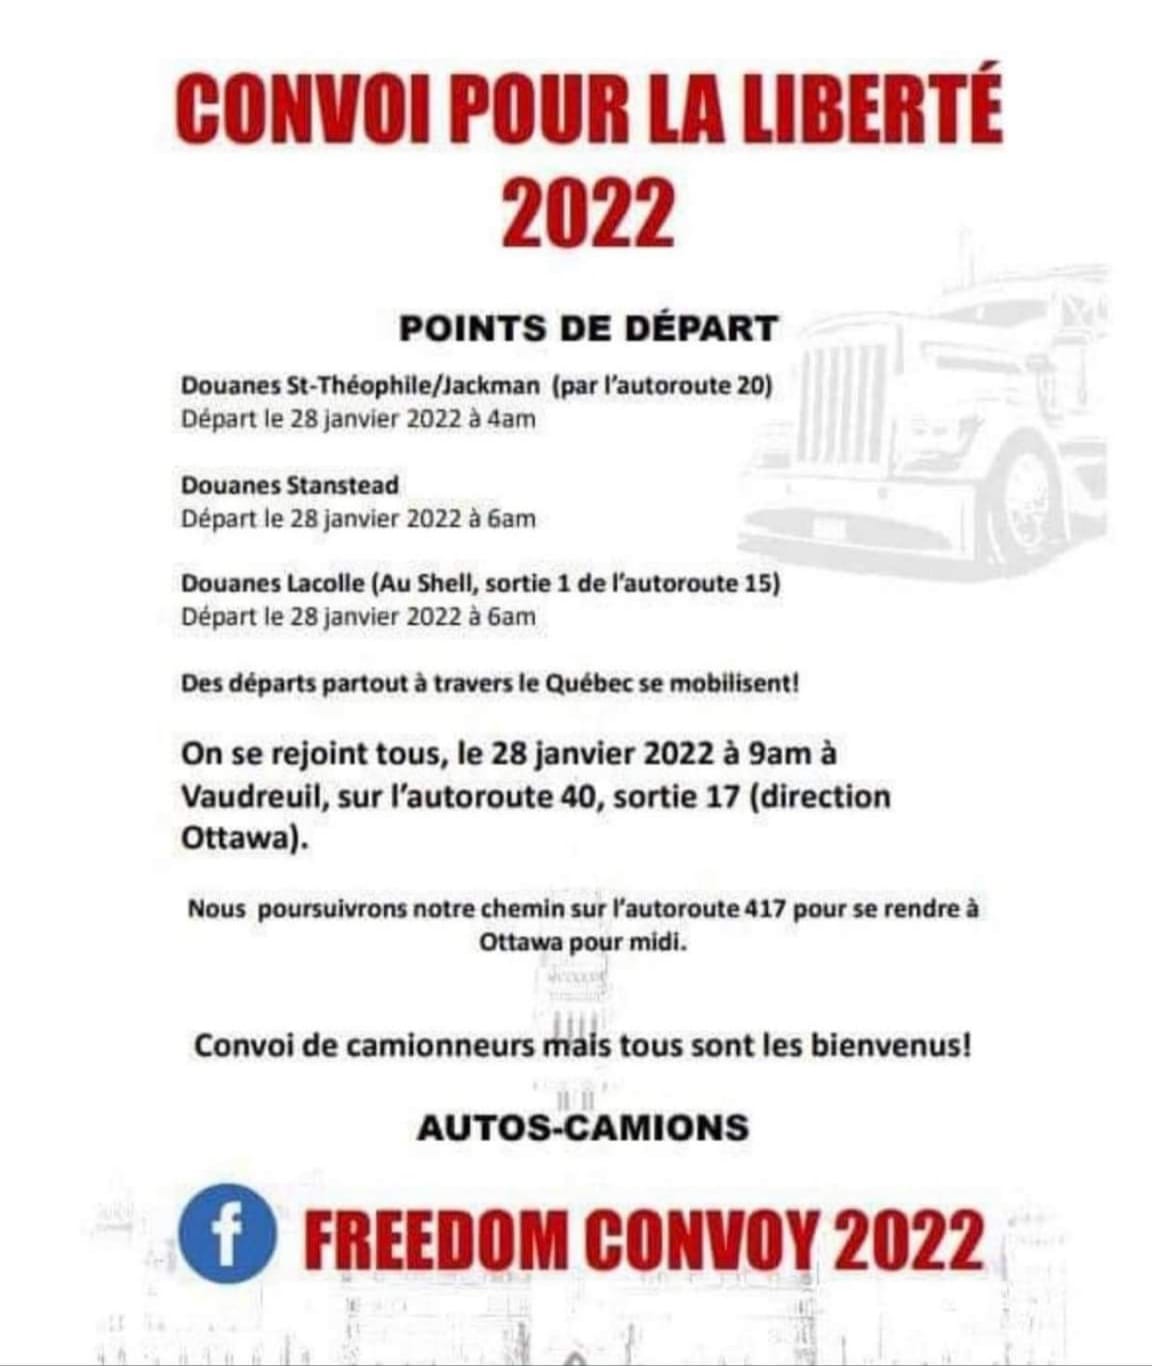 convoi-pour-la-liberte-2022-et-les-points-de-depart-de-quebec.jpg